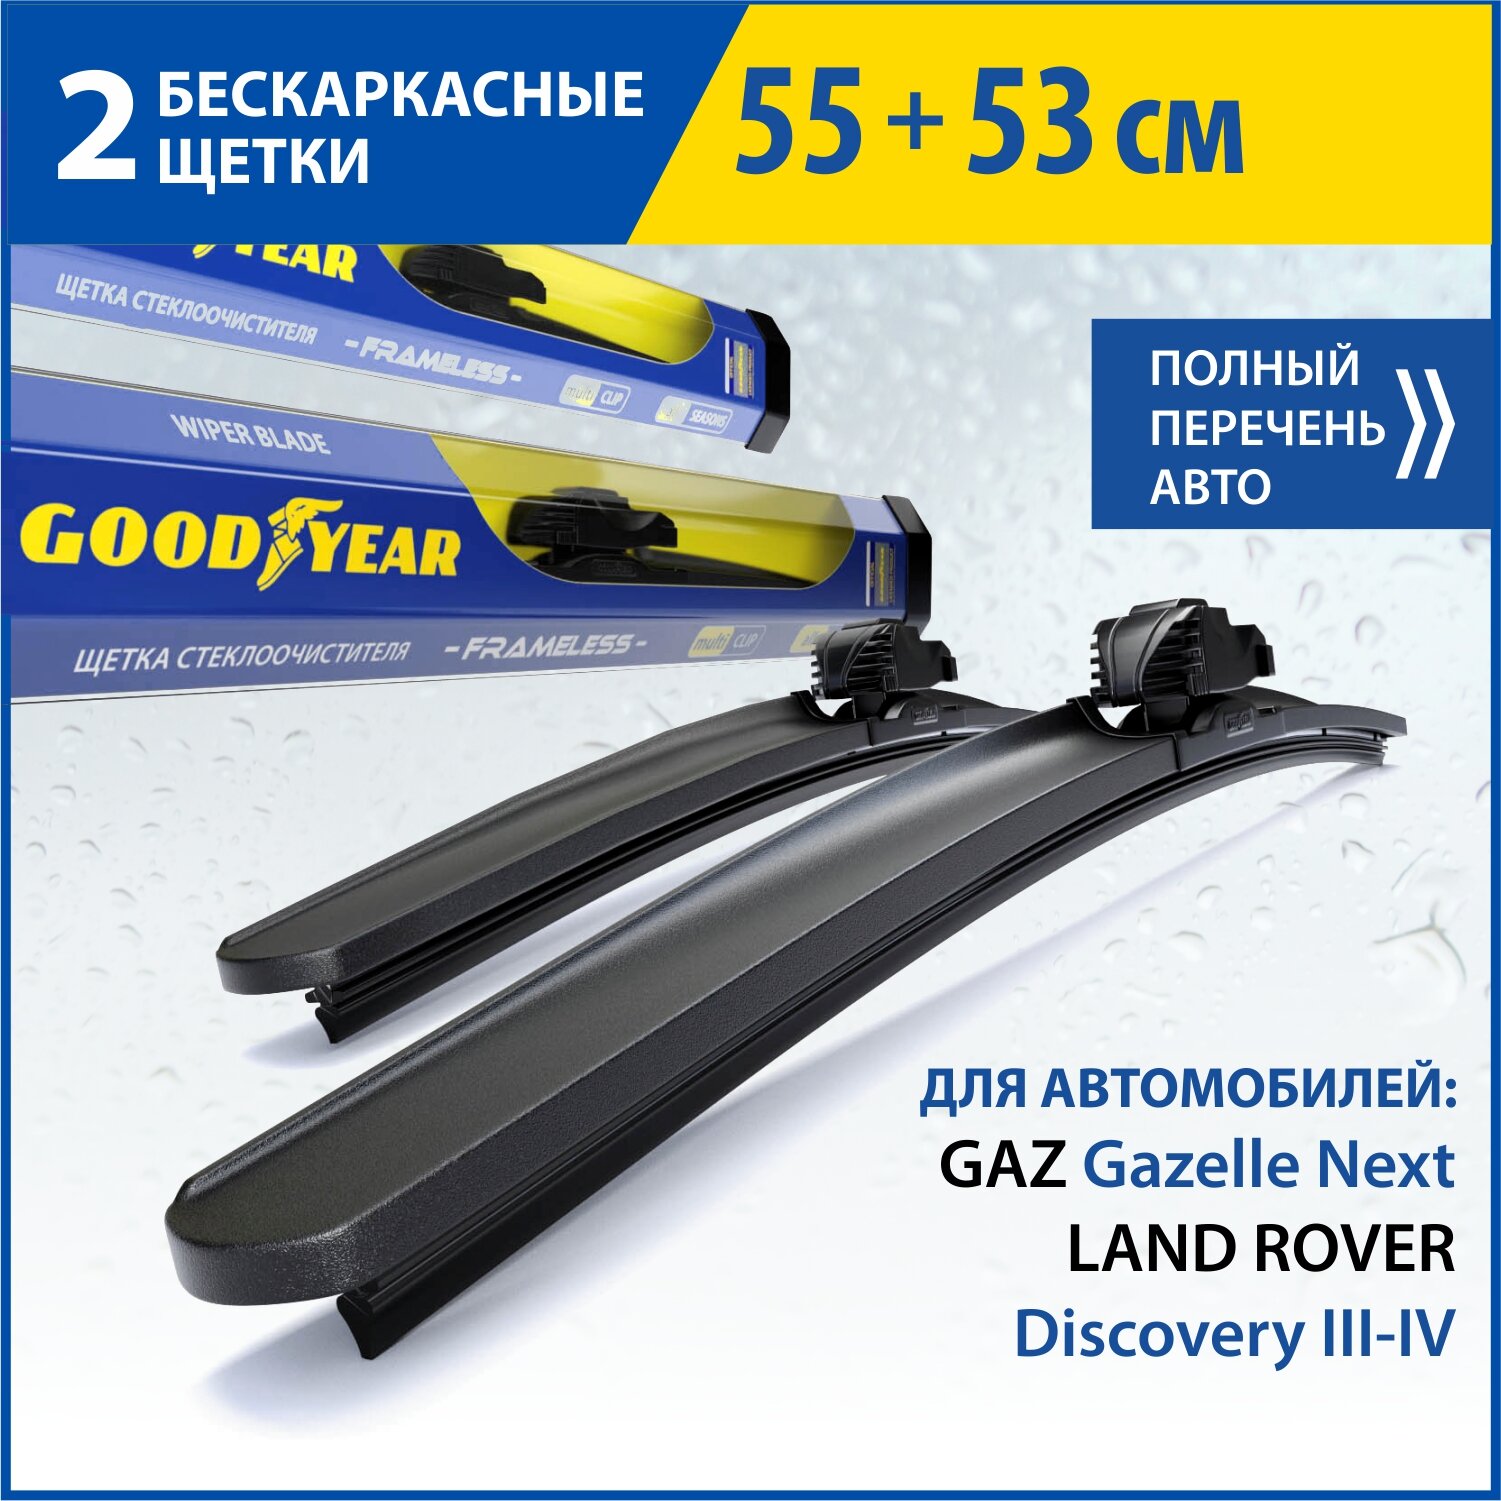 2 Щетки стеклоочистителя в комплекте (55+53 см), Дворники для автомобиля GOODYEAR для GAZ Gazelle Next, LAND ROVER Discovery III-IV